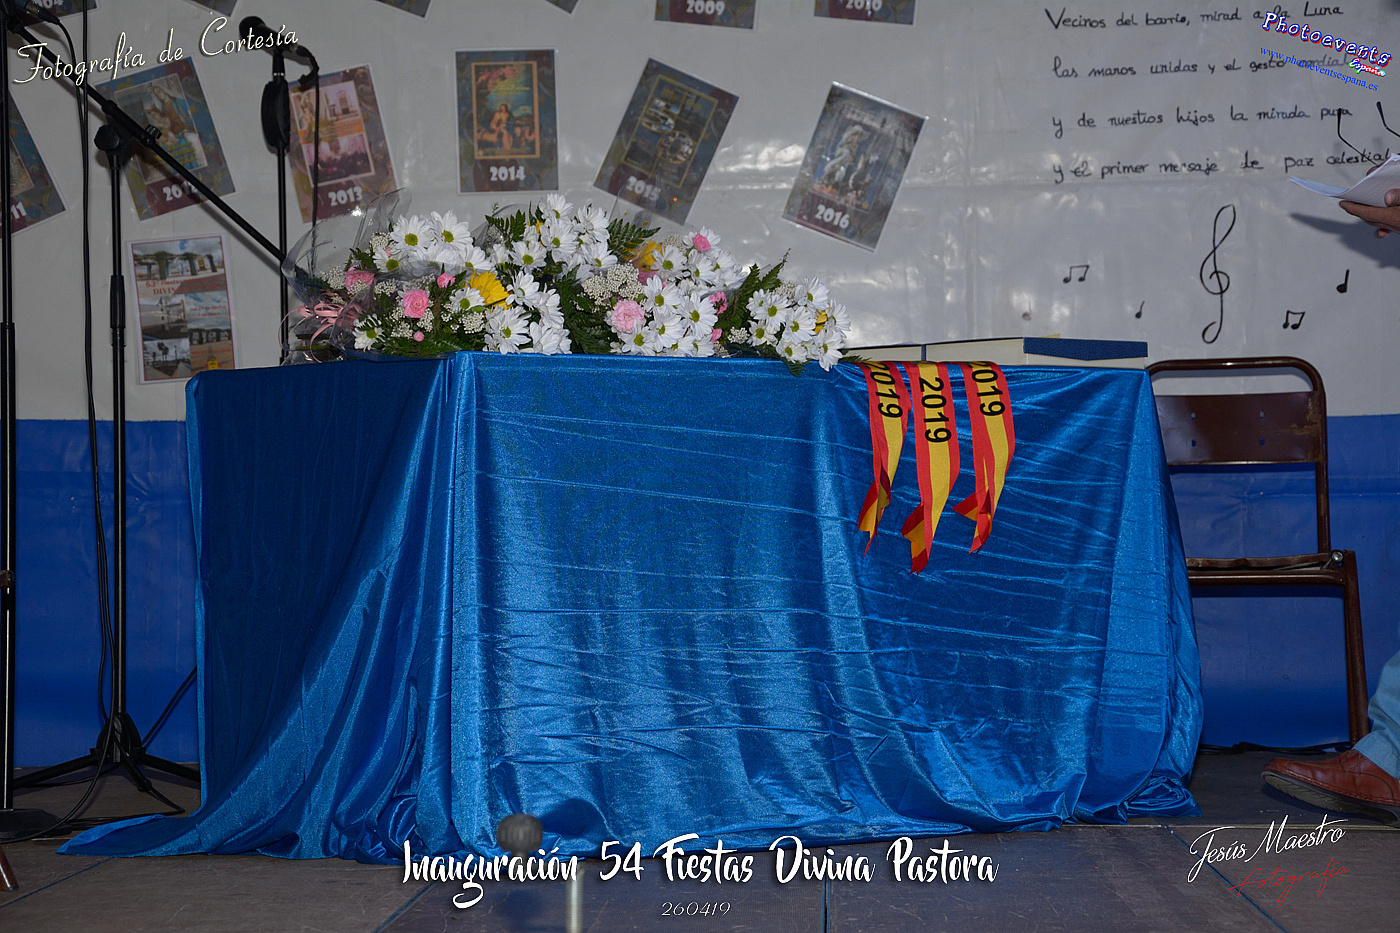 Inauguración Fiestas Divina Pastora